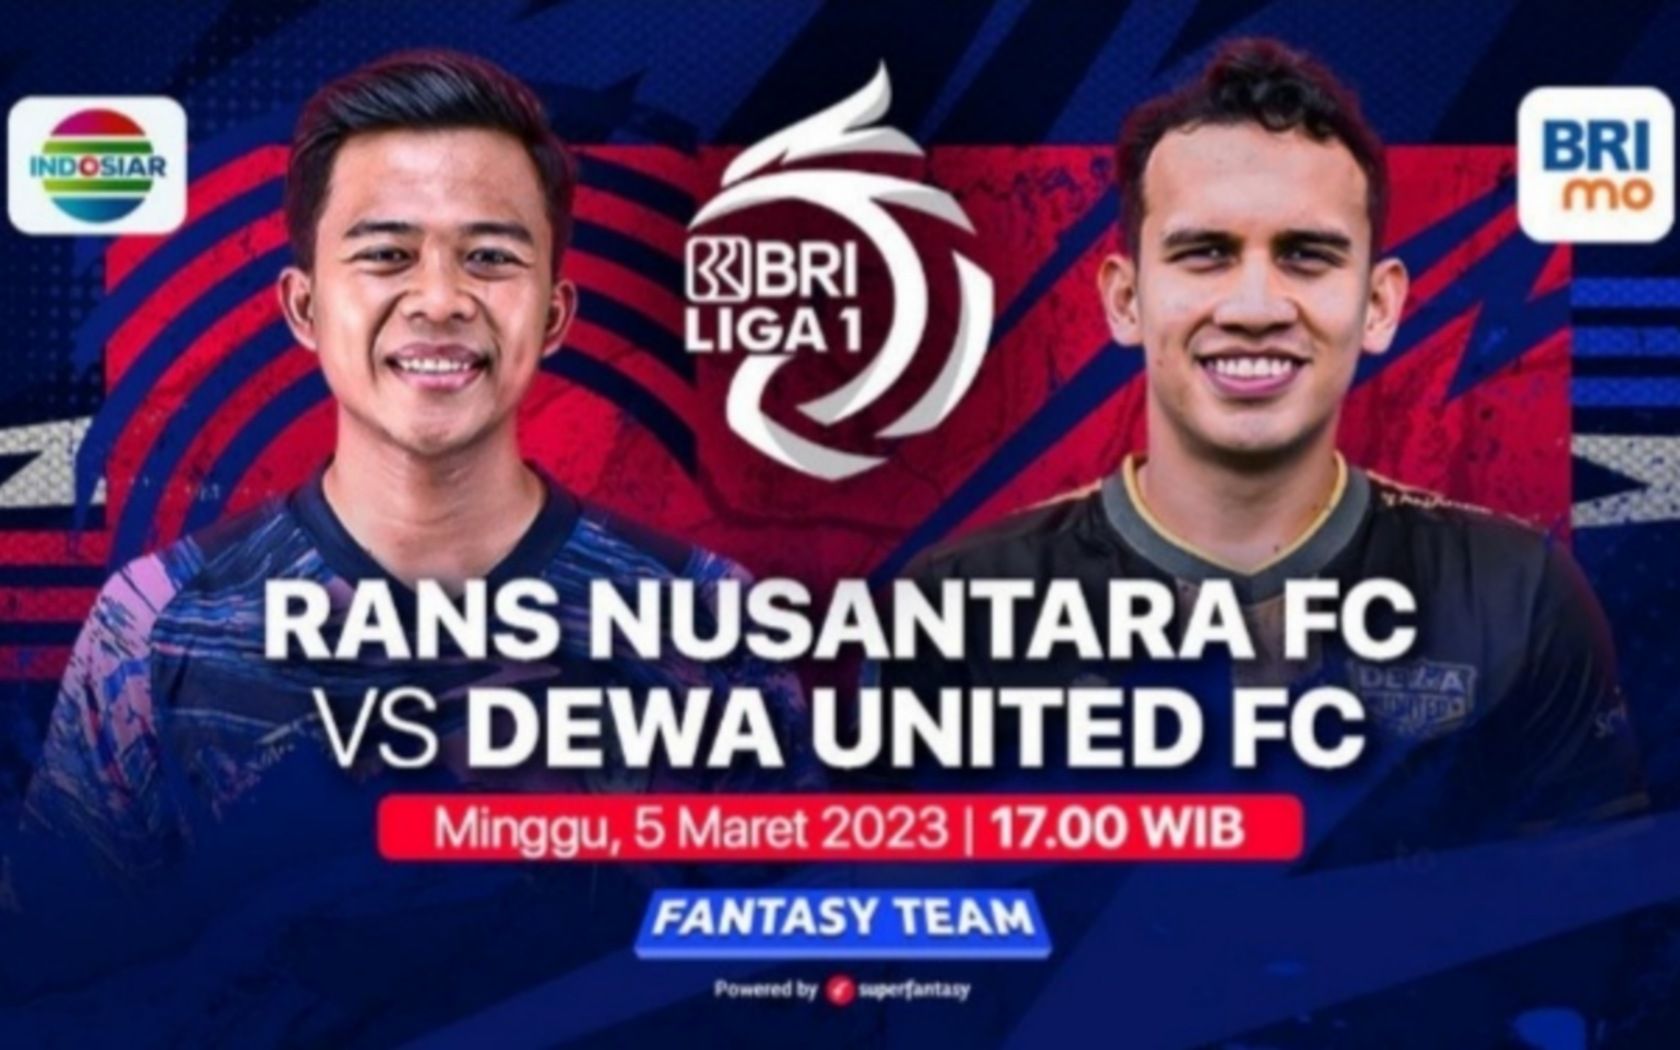 Prediksi formasi susunan pemain Rans Nusantara vs Dewa United pertandingan BRI Liga 1 hari ini